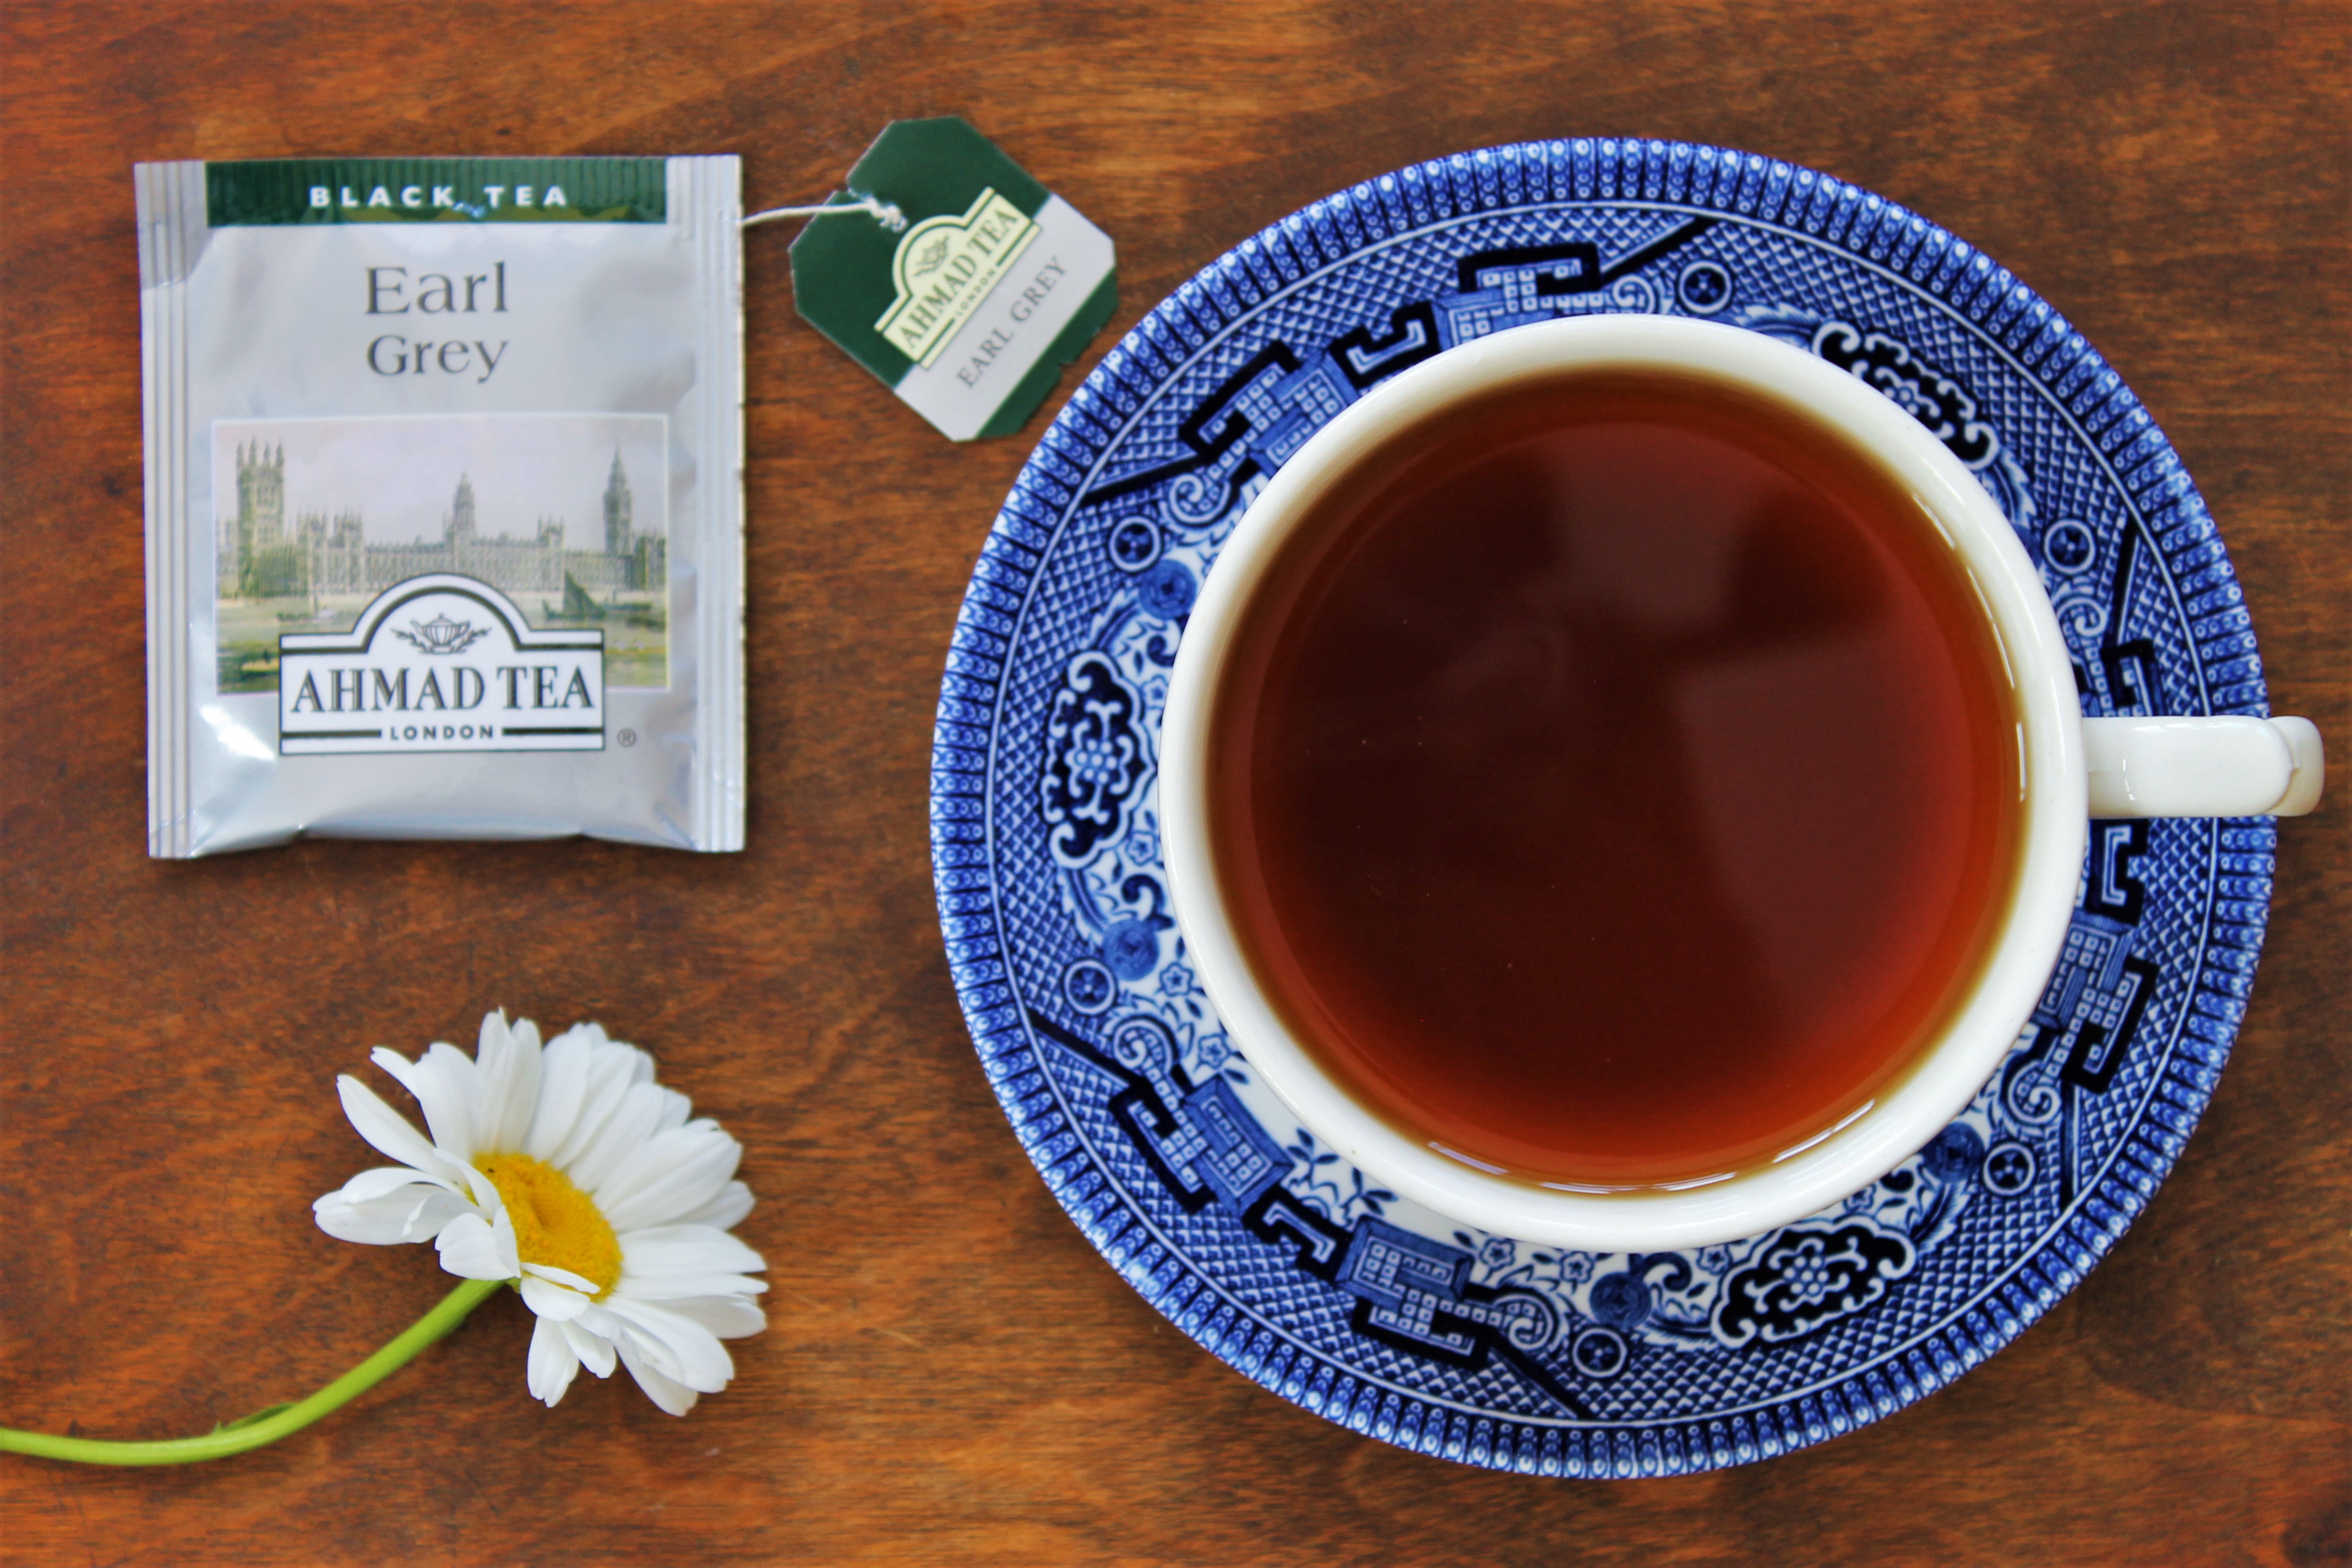 ahmad tea earl grey review